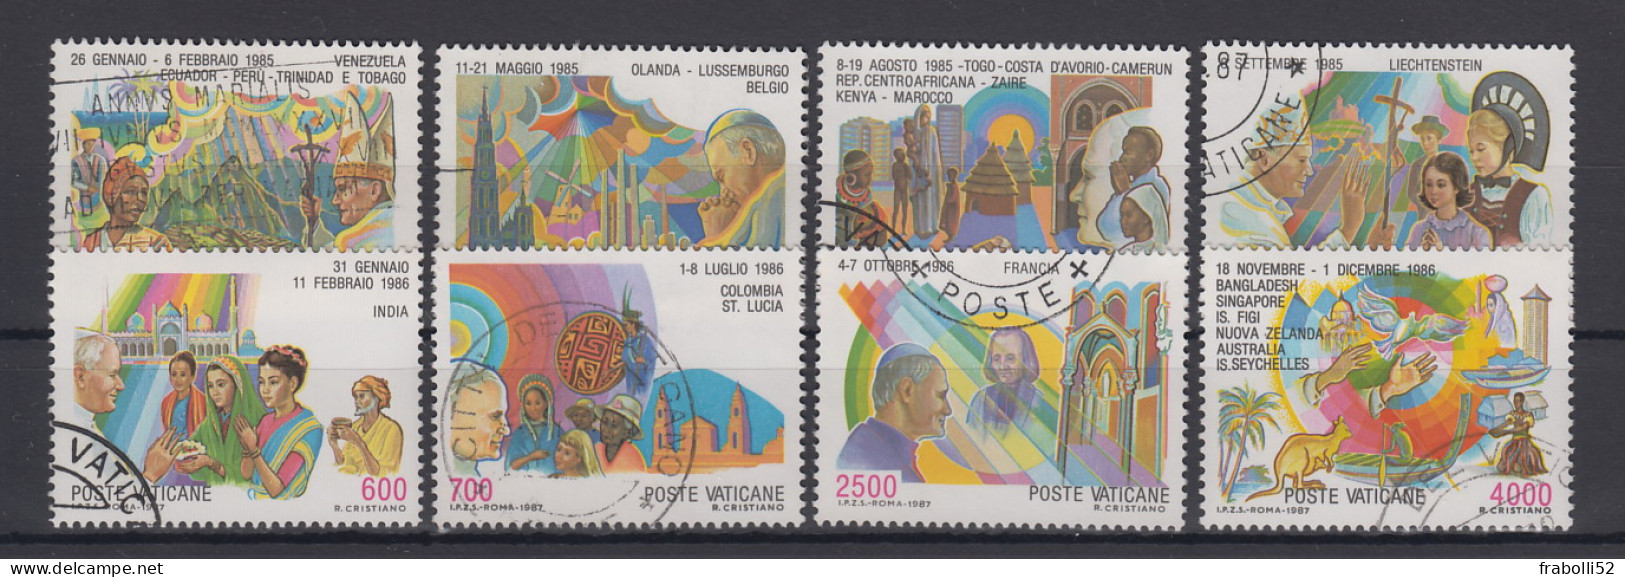 Vaticano Usati Di Qualità: N. 817-24 - Used Stamps